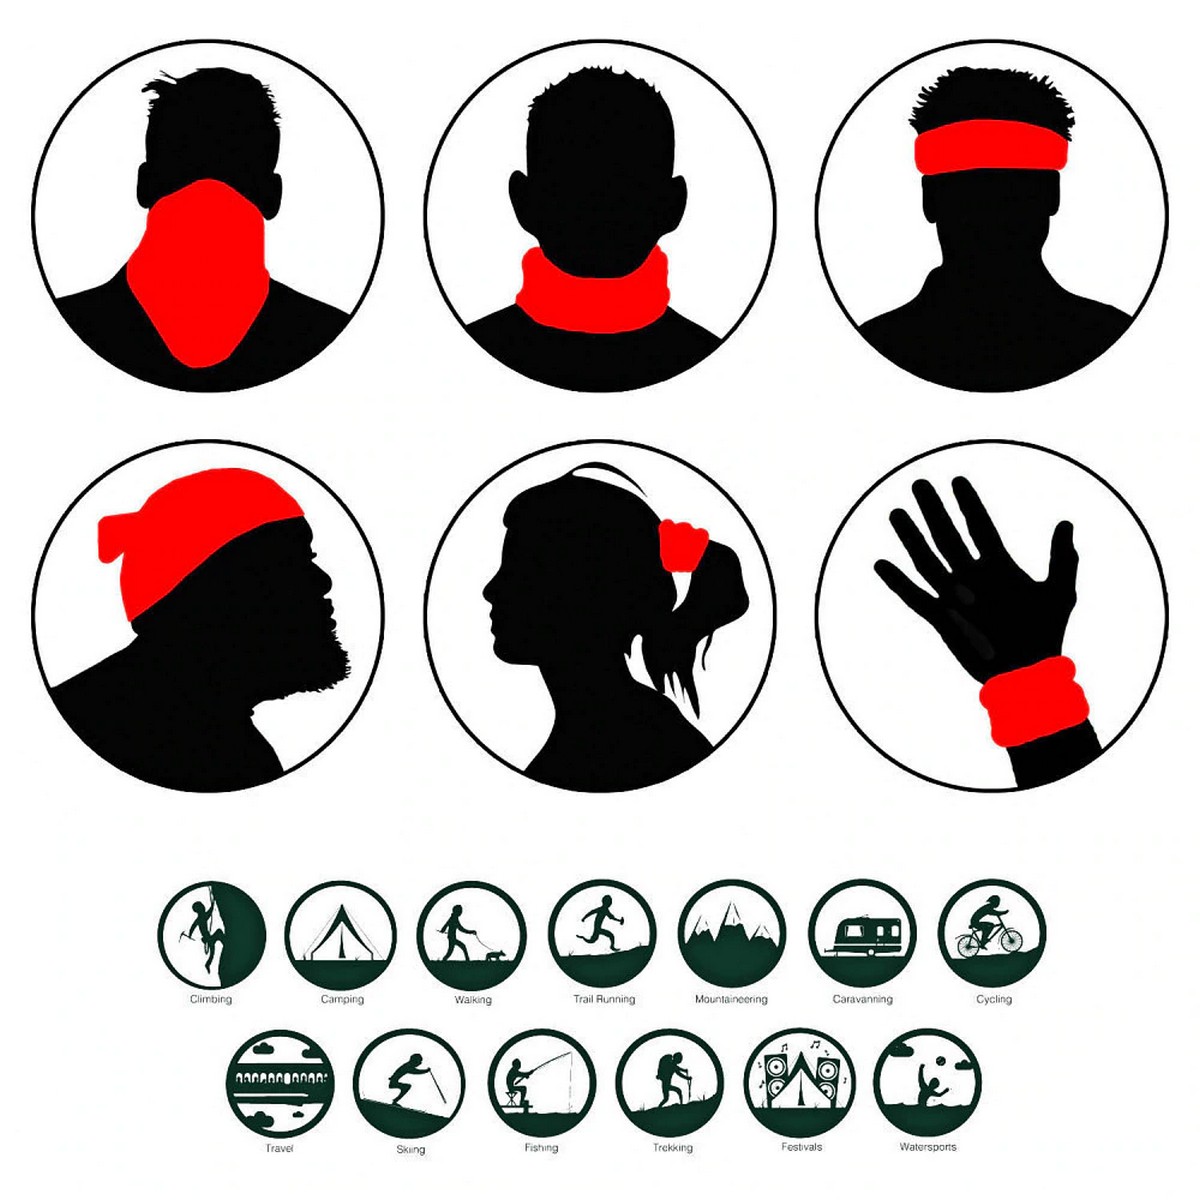 вишенаменски шал за лице и главу - употреба